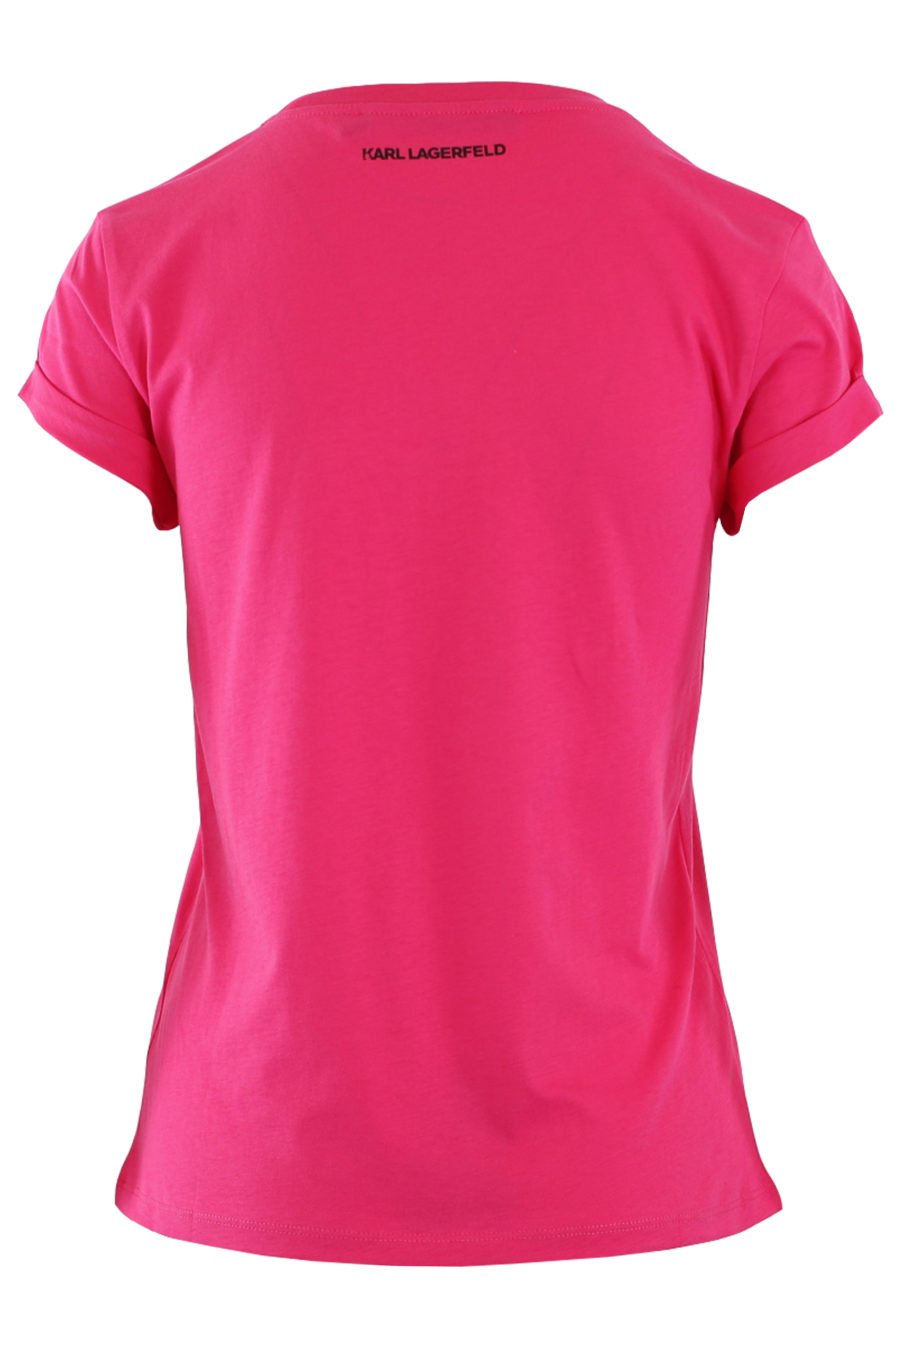 Fuchsiafarbenes T-Shirt mit Logo und Tasche - IMG 8949